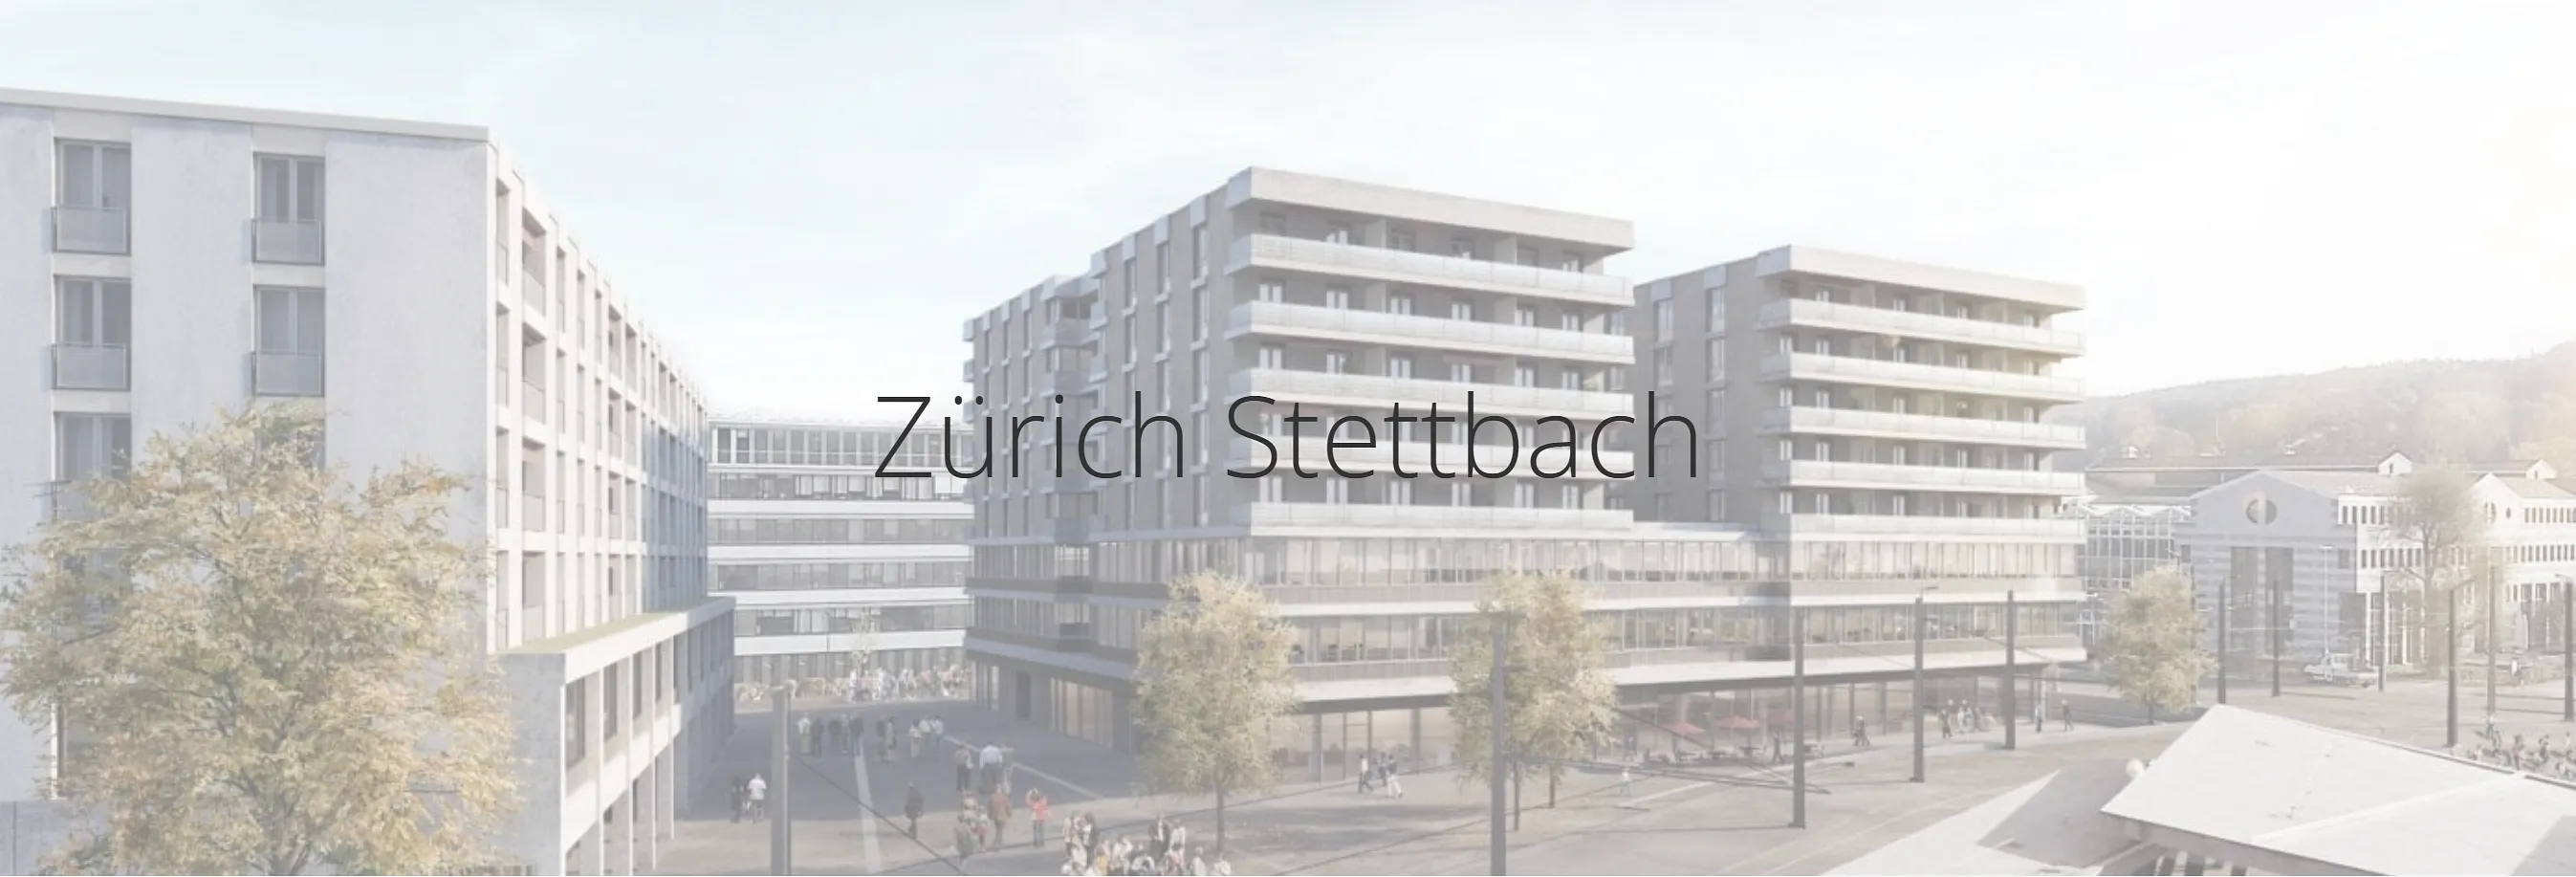 Zahnarzt Stettbach Dübendorf | ZURICHDENTAL®